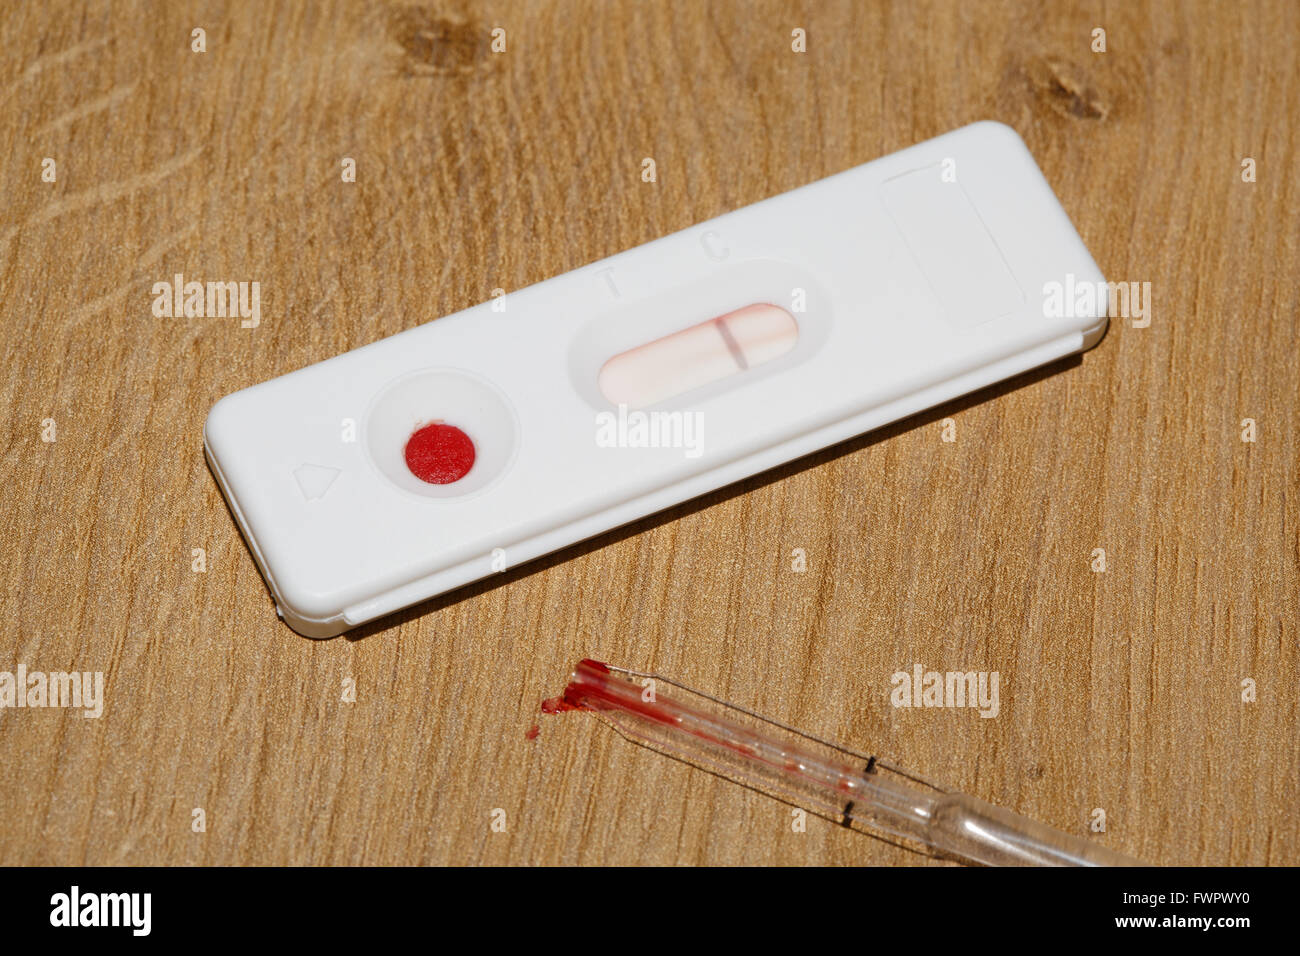 Accueil test sanguin avec résultat négatif Banque D'Images